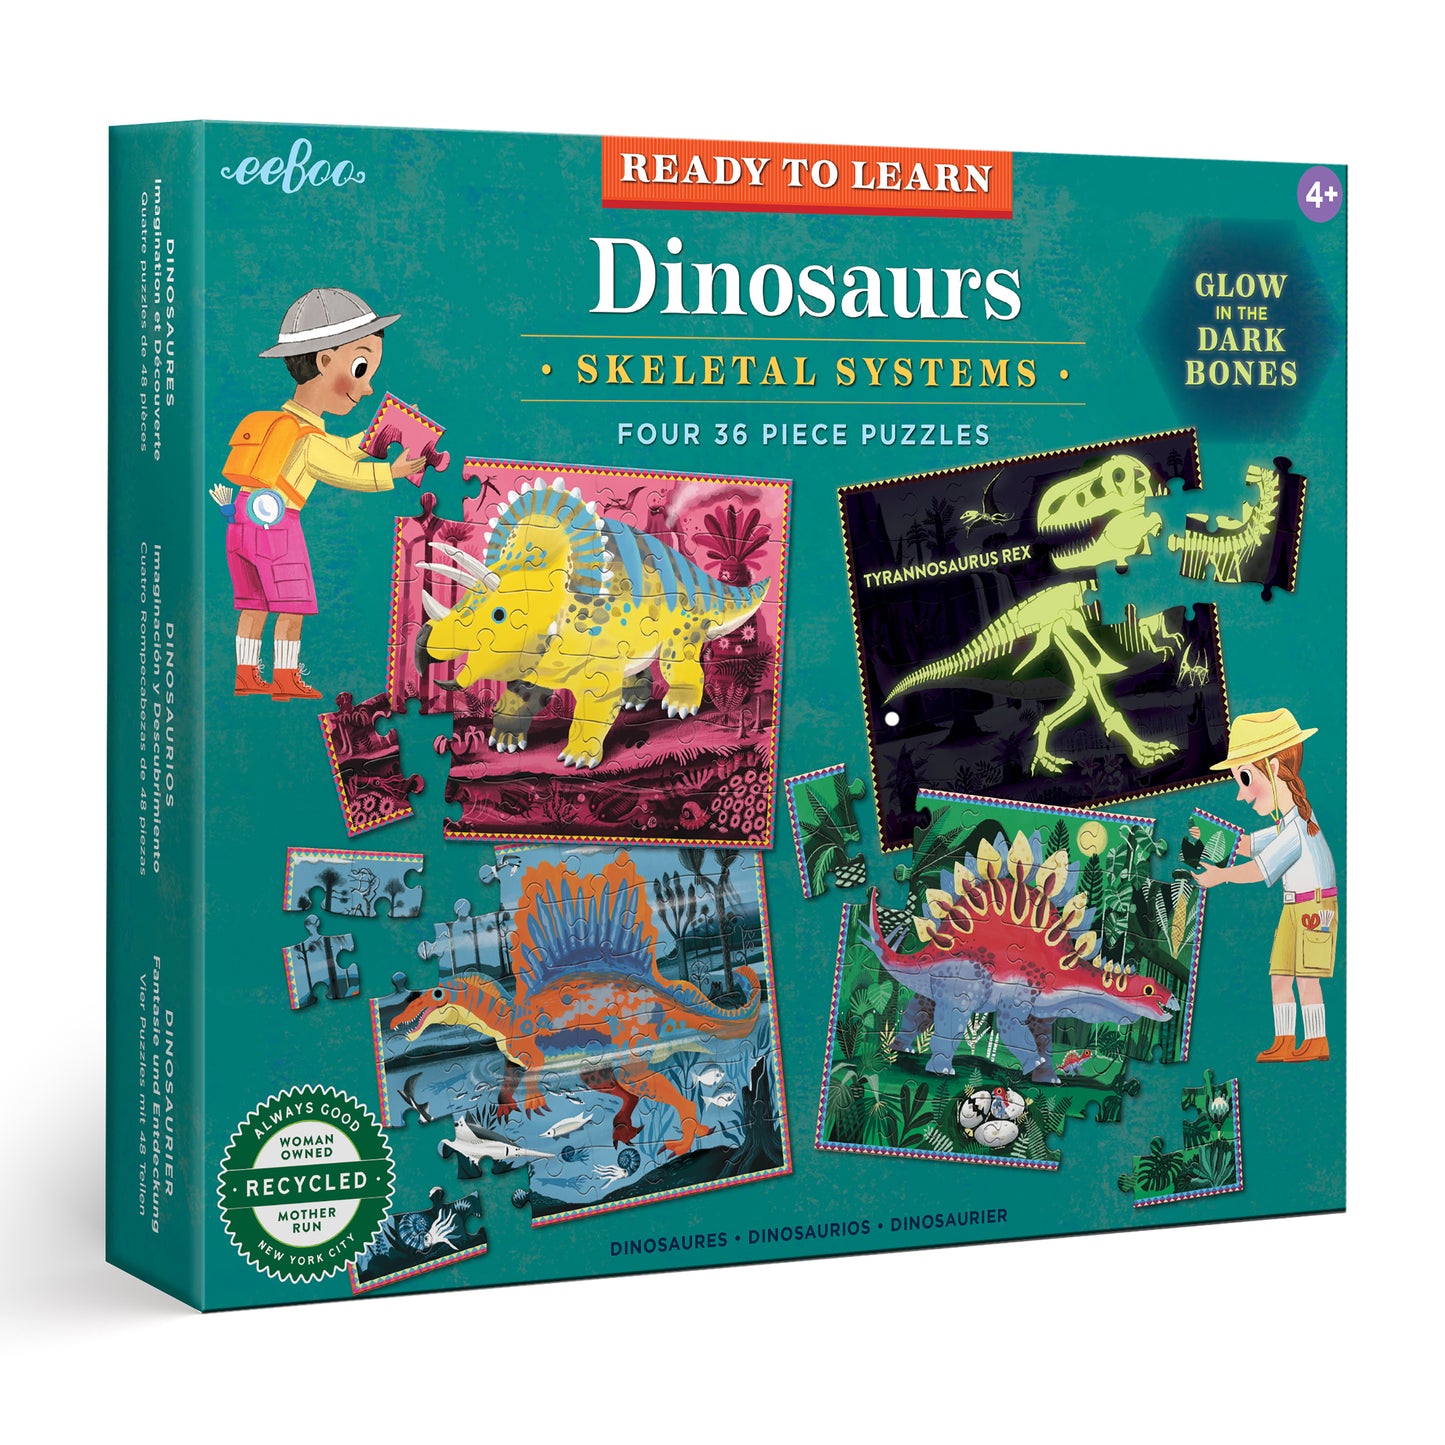 Dinosaur Drag & Drop Puzzle  Play Dinosaur Drag & Drop Puzzle on  PrimaryGames